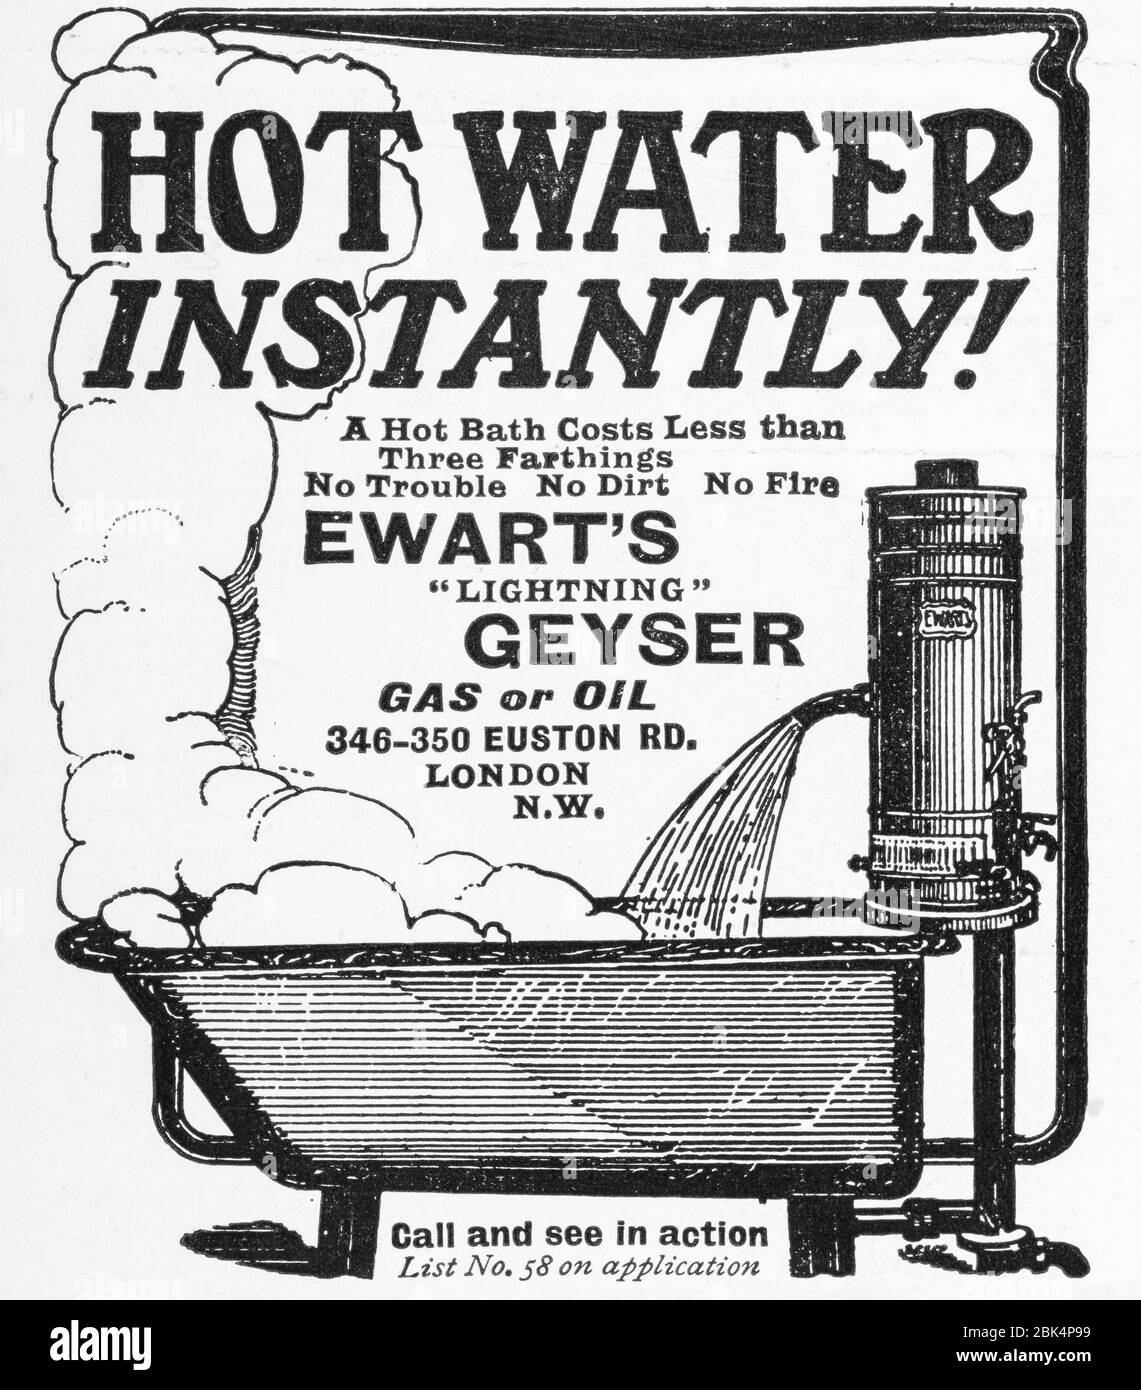 Antiguo anuncio de higiene personal de principios de 1900, antes del amanecer de los estándares publicitarios. Historia de la publicidad, viejos anuncios de productos de higiene. Foto de stock